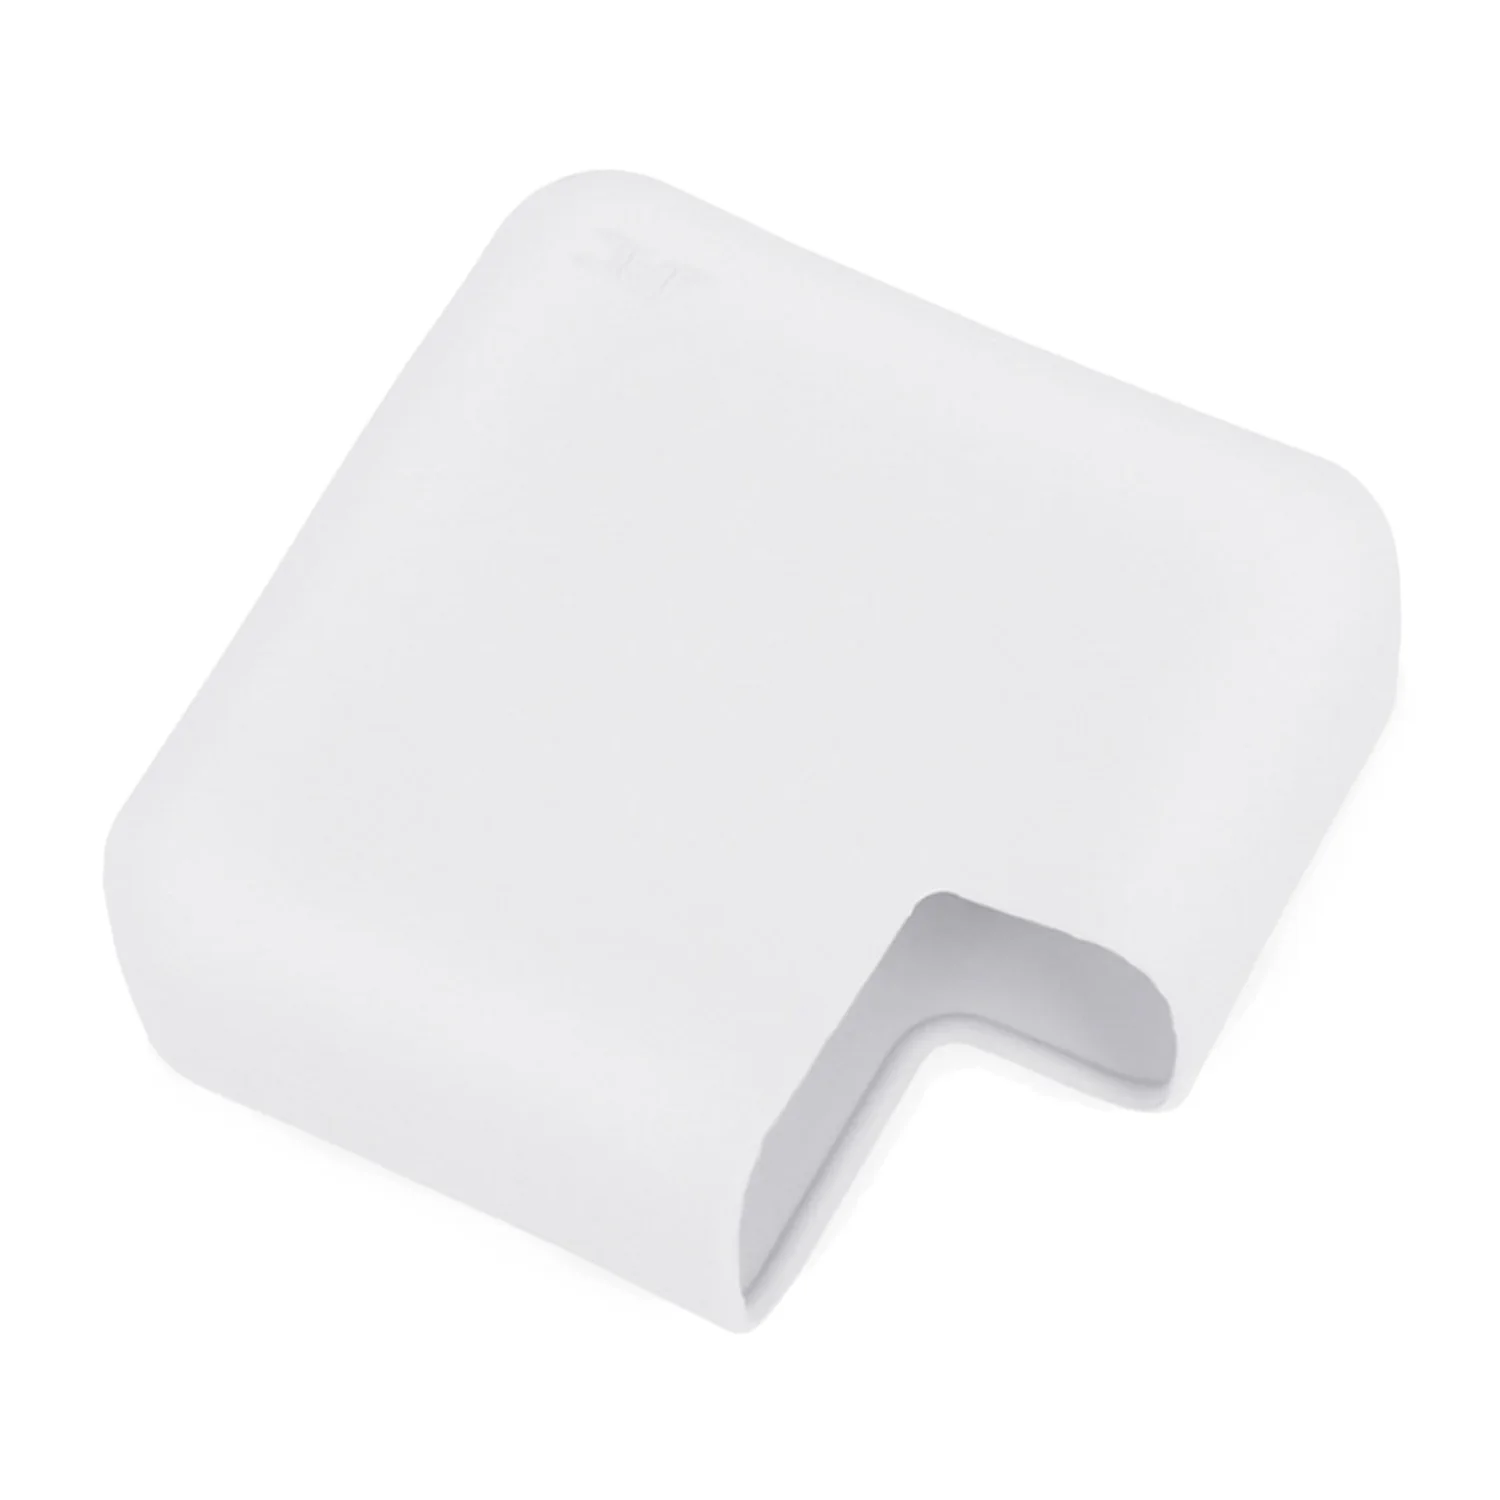 Besegad силиконовый защитный чехол для Apple MacBook Mac Book Pro retina 15 дюймов аксессуары для ноутбуков - Цвет: White